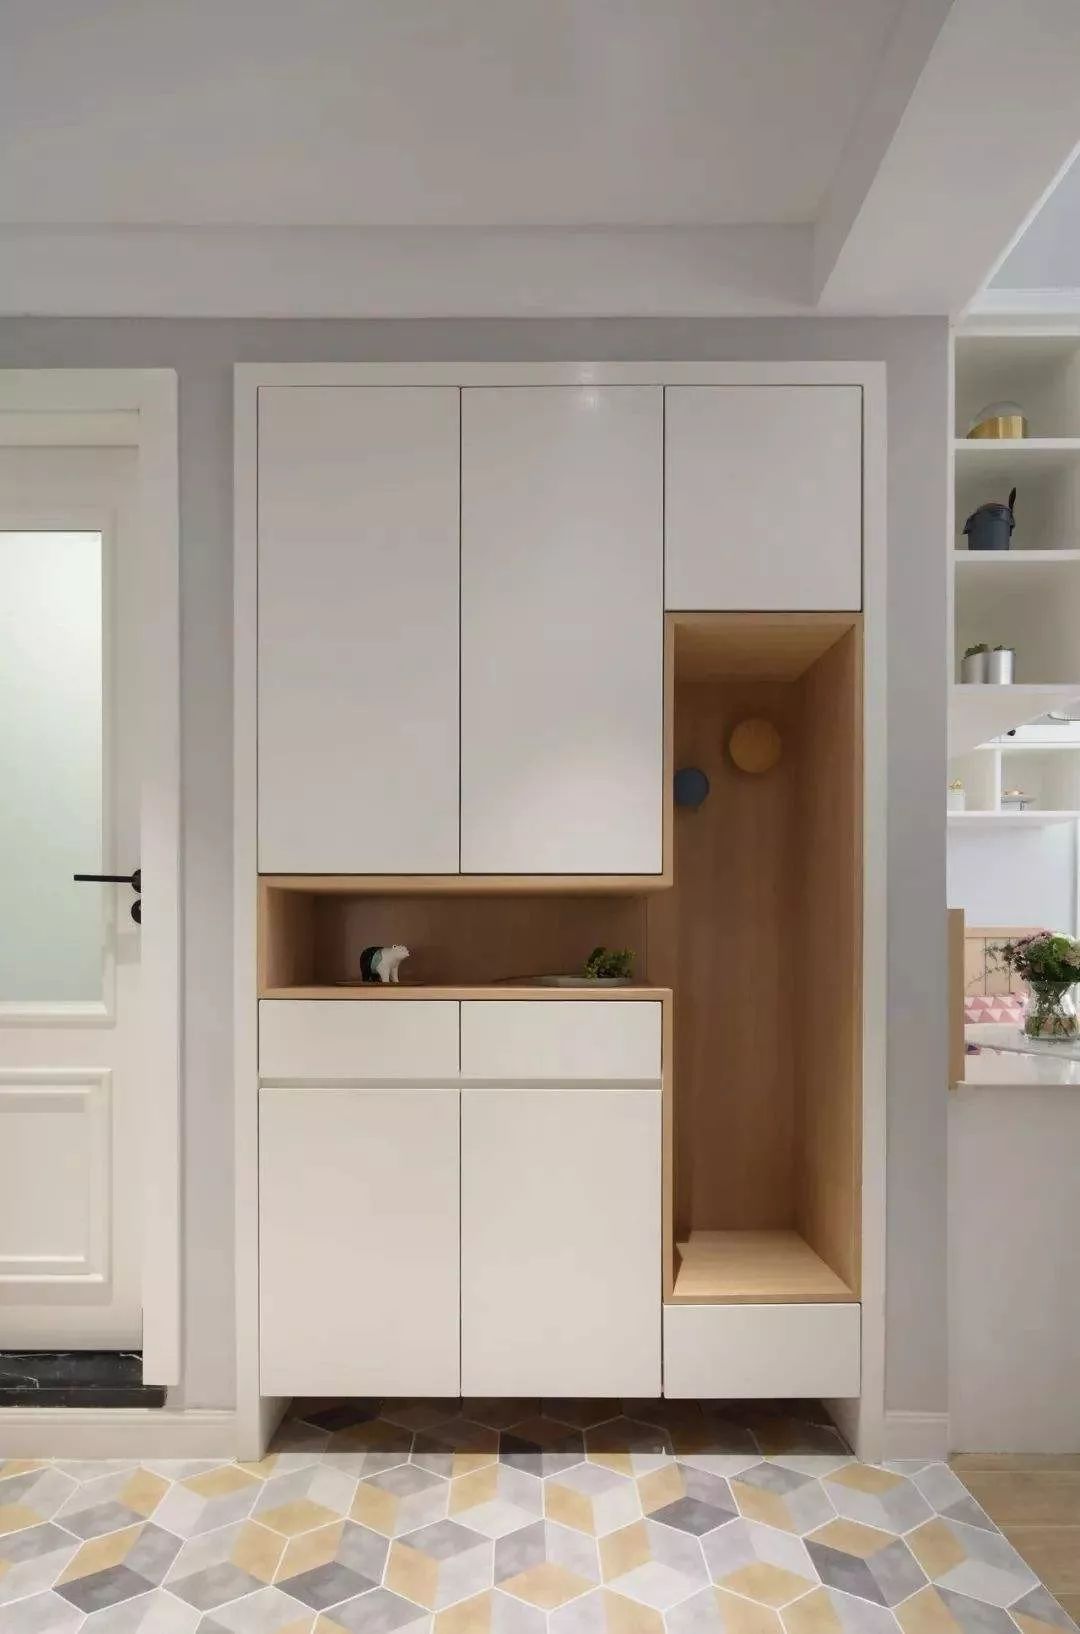 常见的进门一个小空间,可以选择通顶式组合柜,包含鞋柜,墙壁挂钩,换